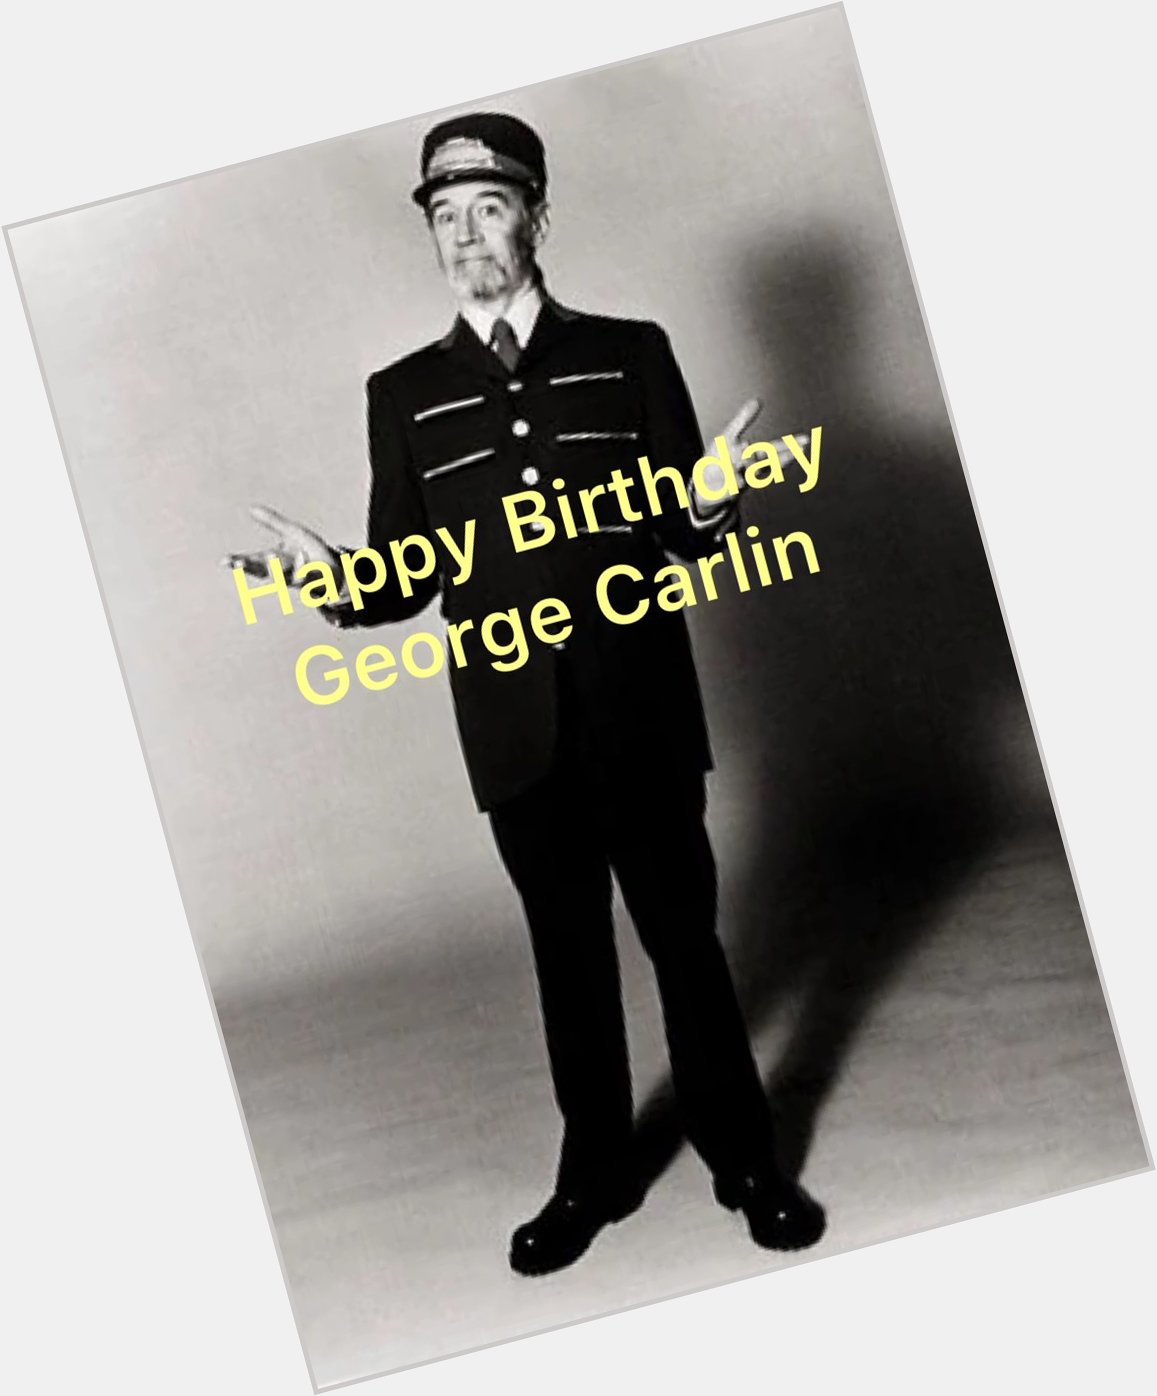 Happy Birthday George Carlin 